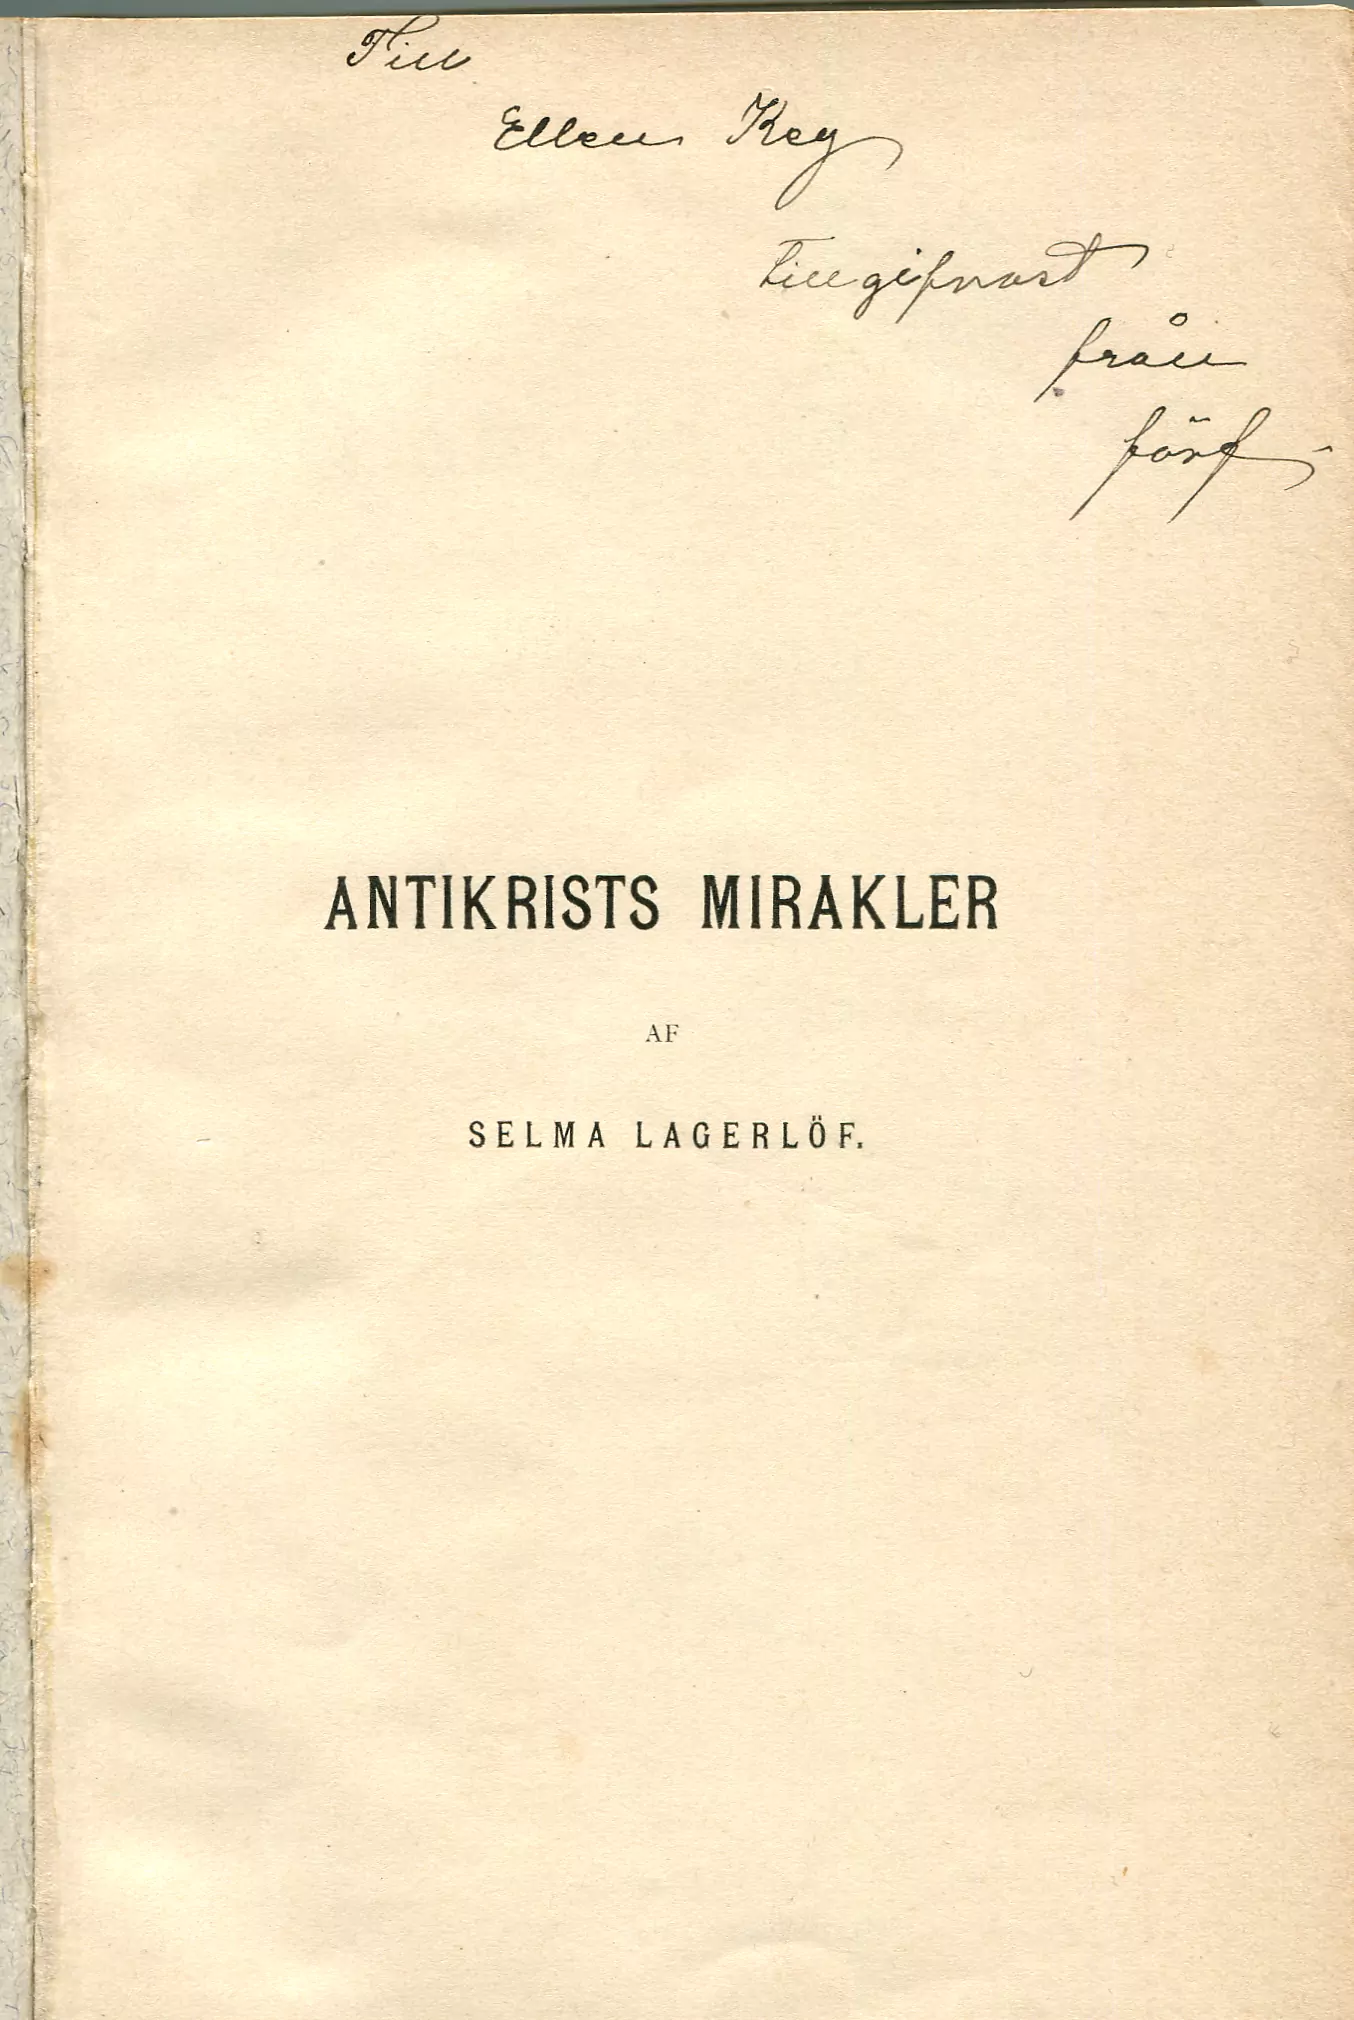 Antikrists mirakler , Stockholm 1897